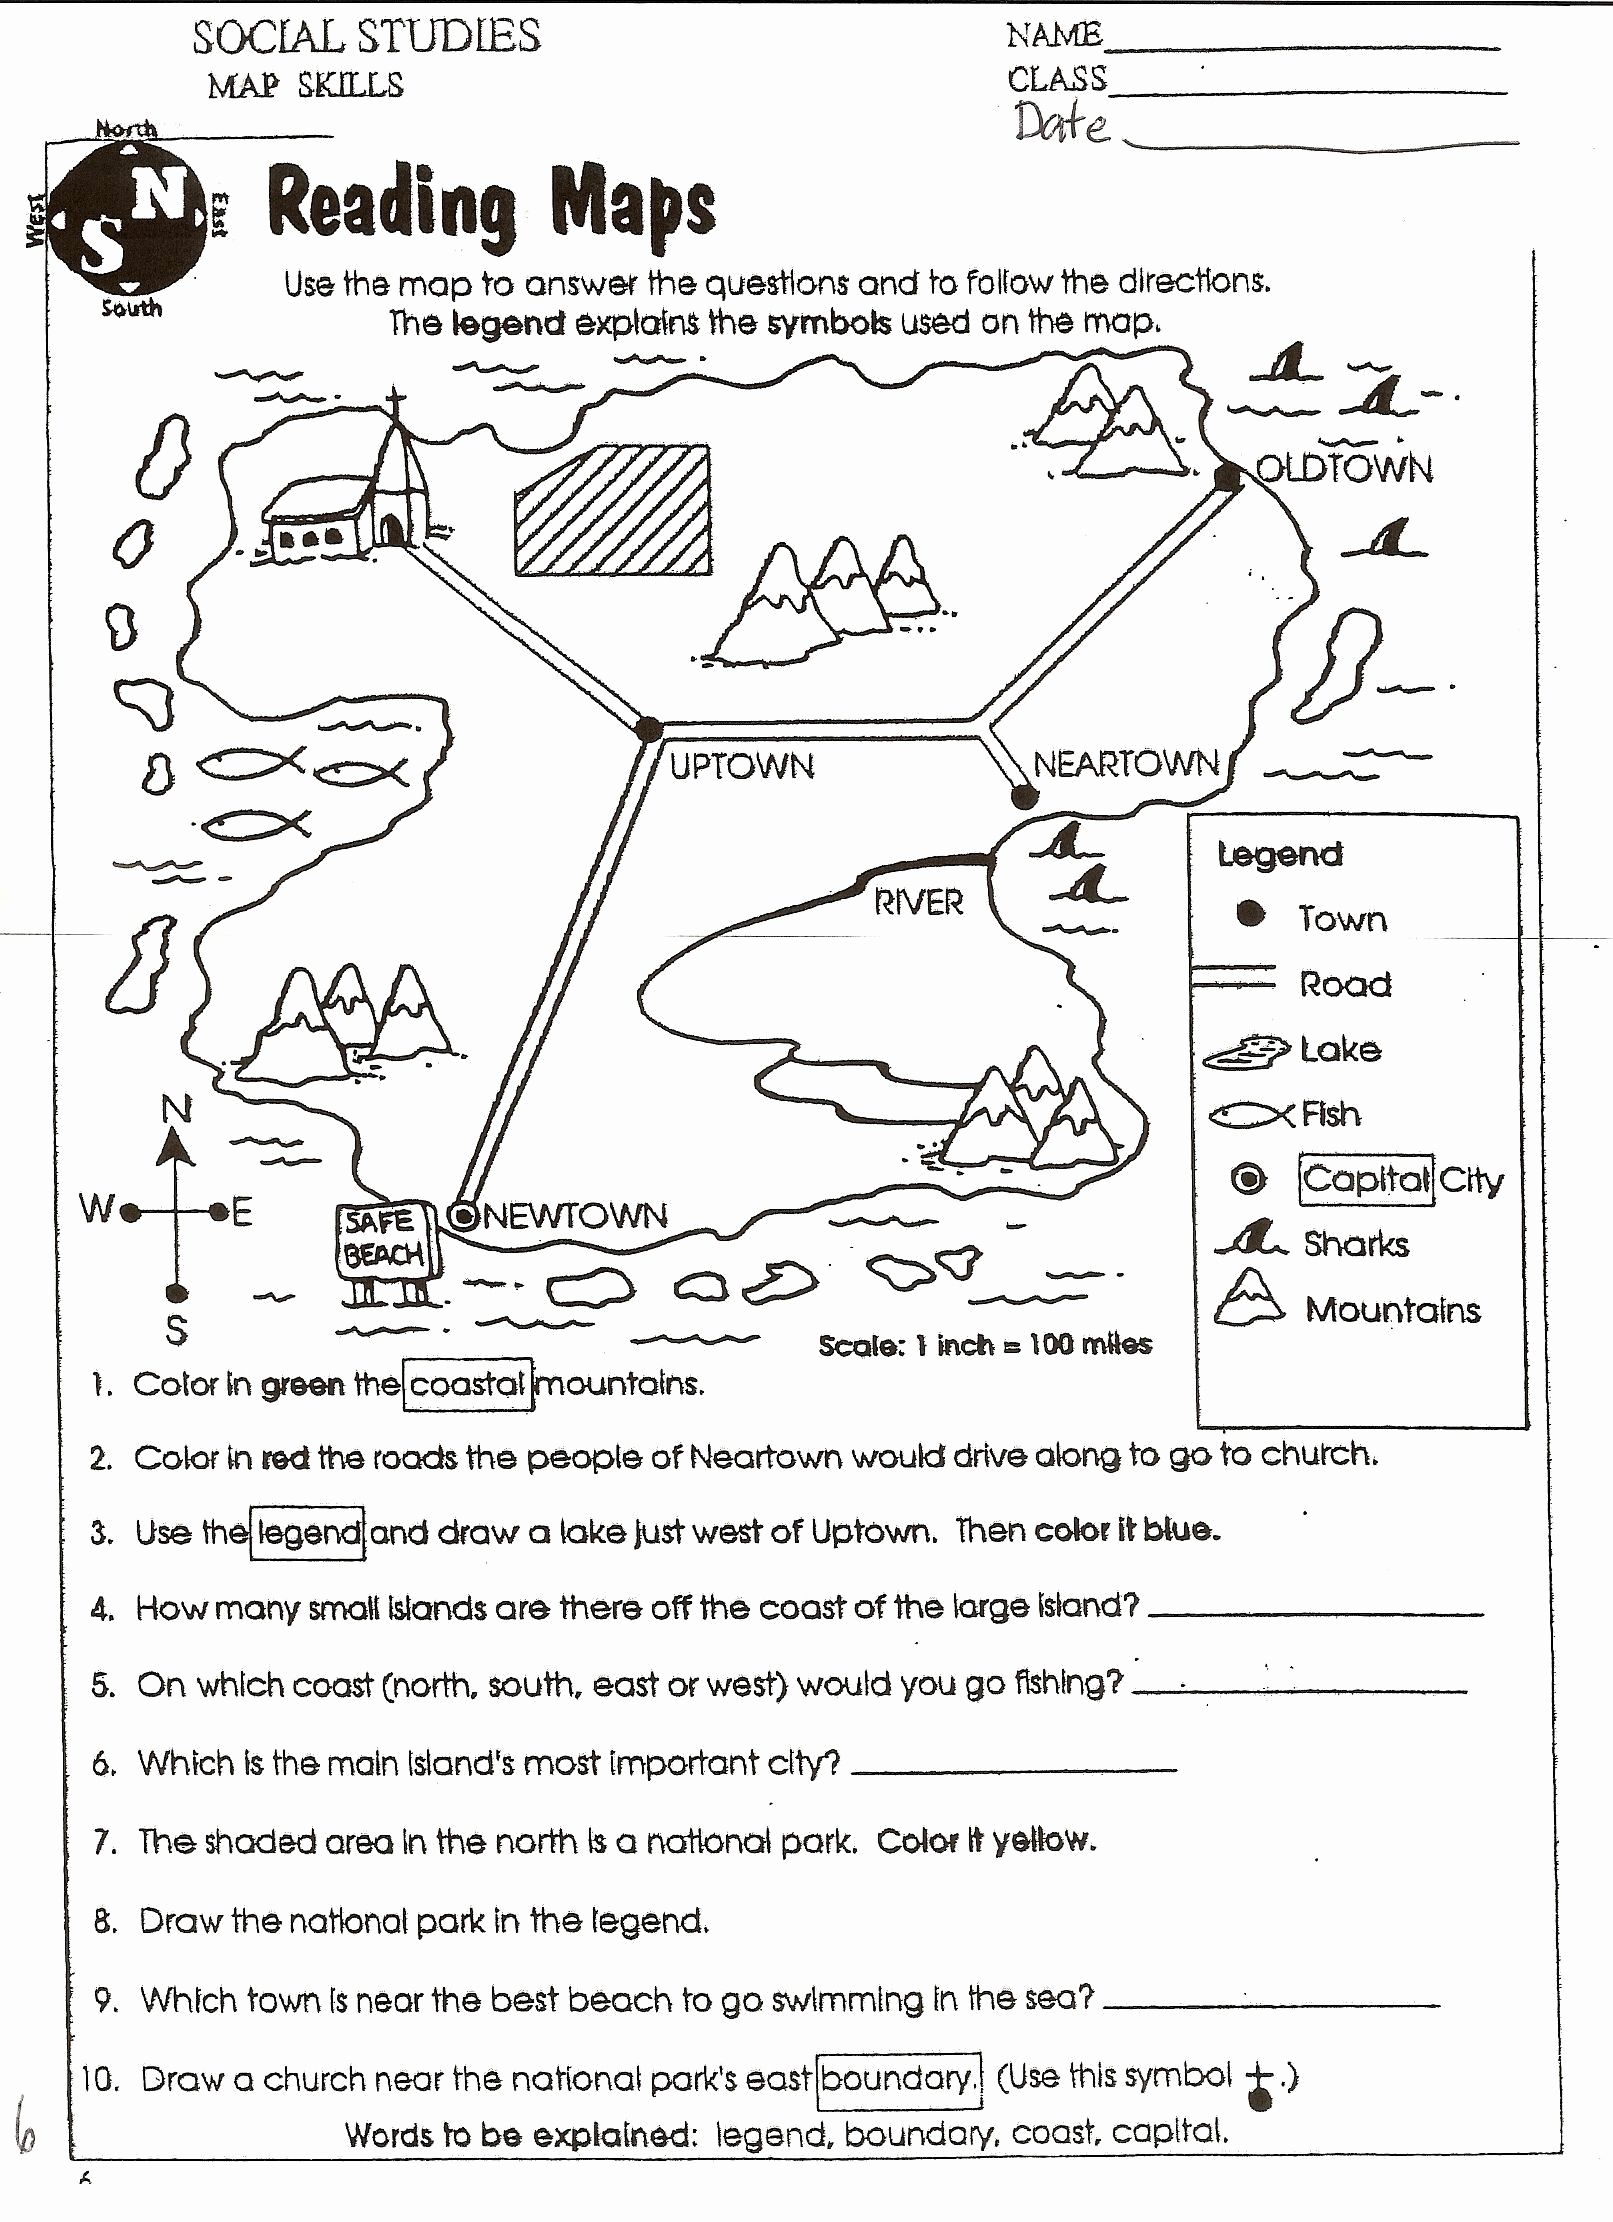 Map Scale Worksheet 4th Grade Luxury Worksheet Map Scale 3rd Grade Valid social Stu S Skills